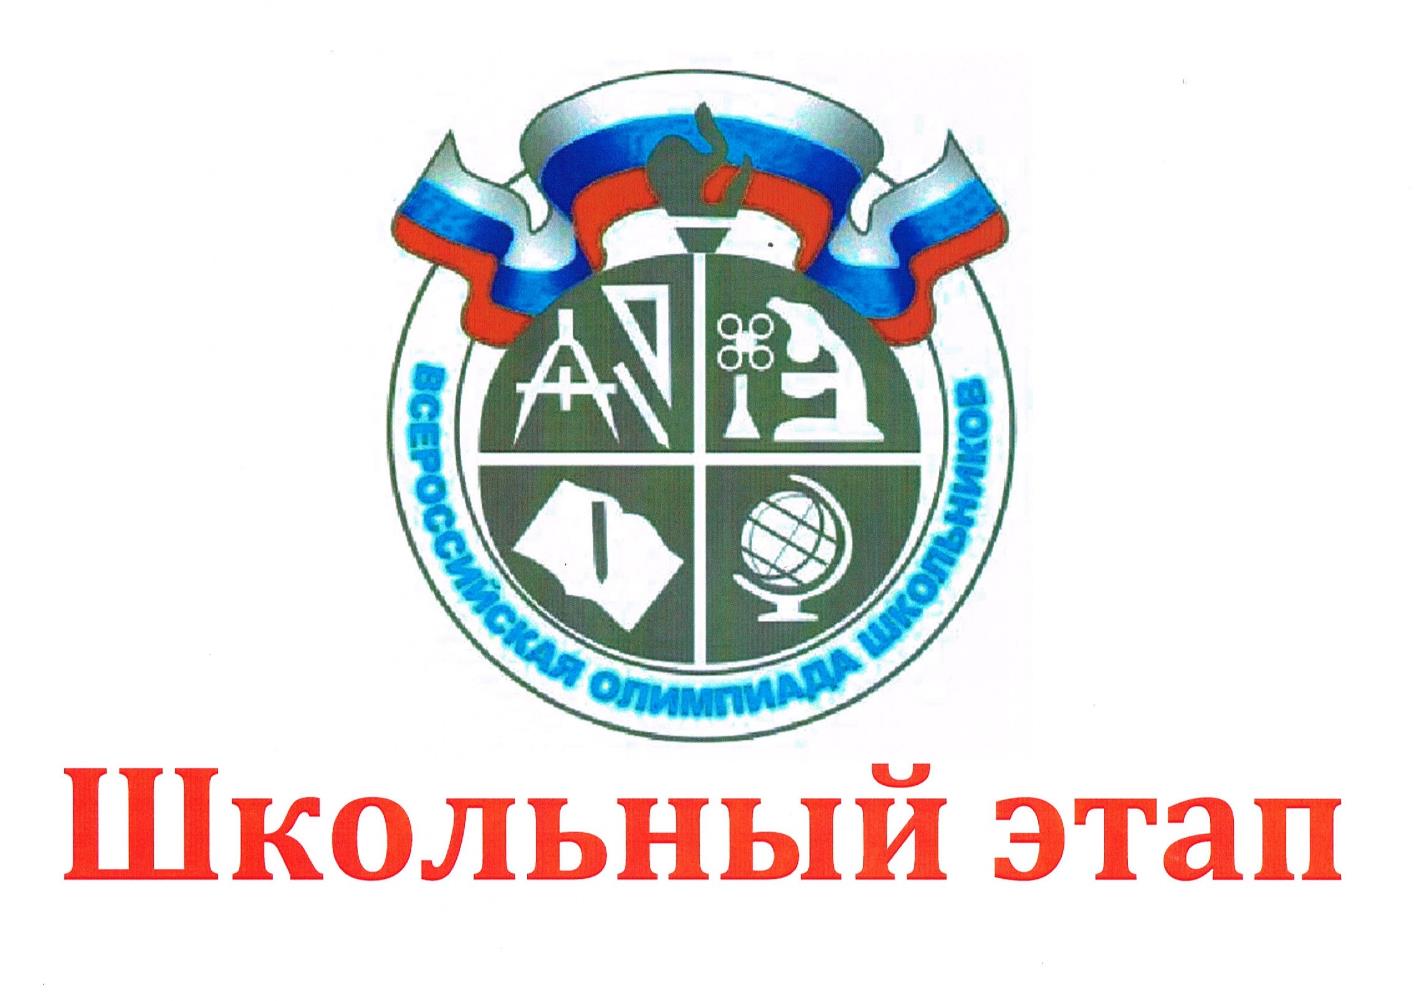 Логотип Всероссийской олимпиады школьников.